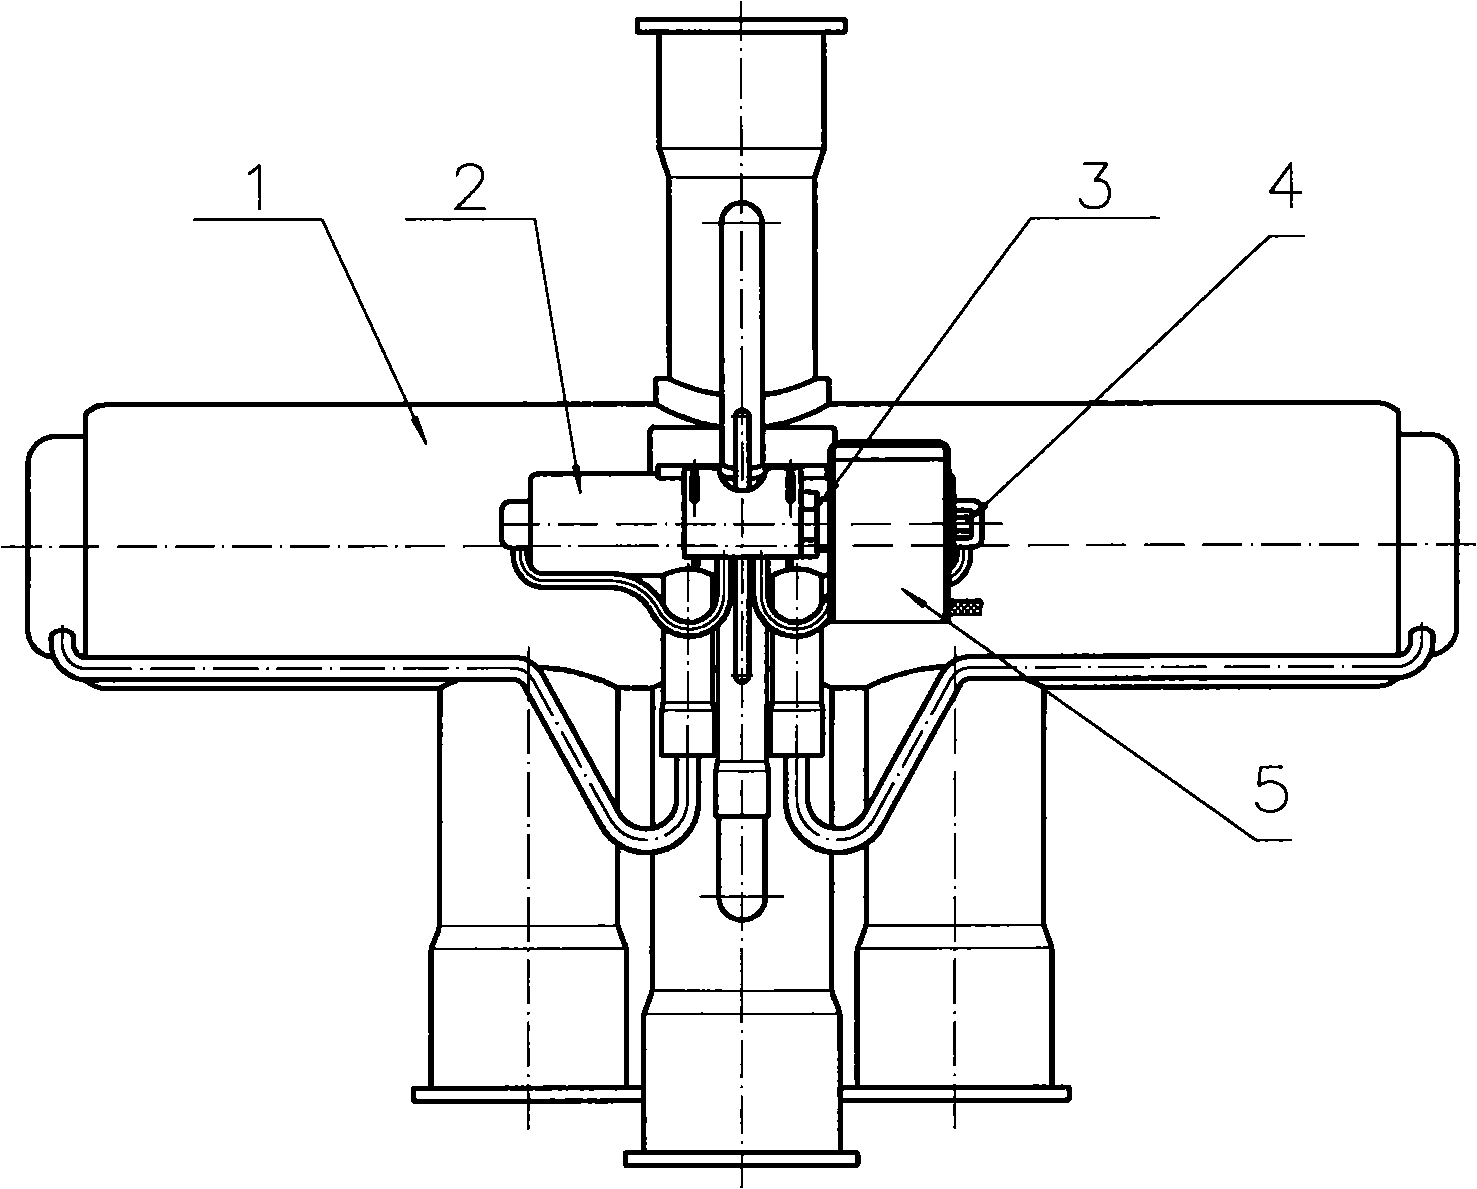 Macrotype four-way reversing valve